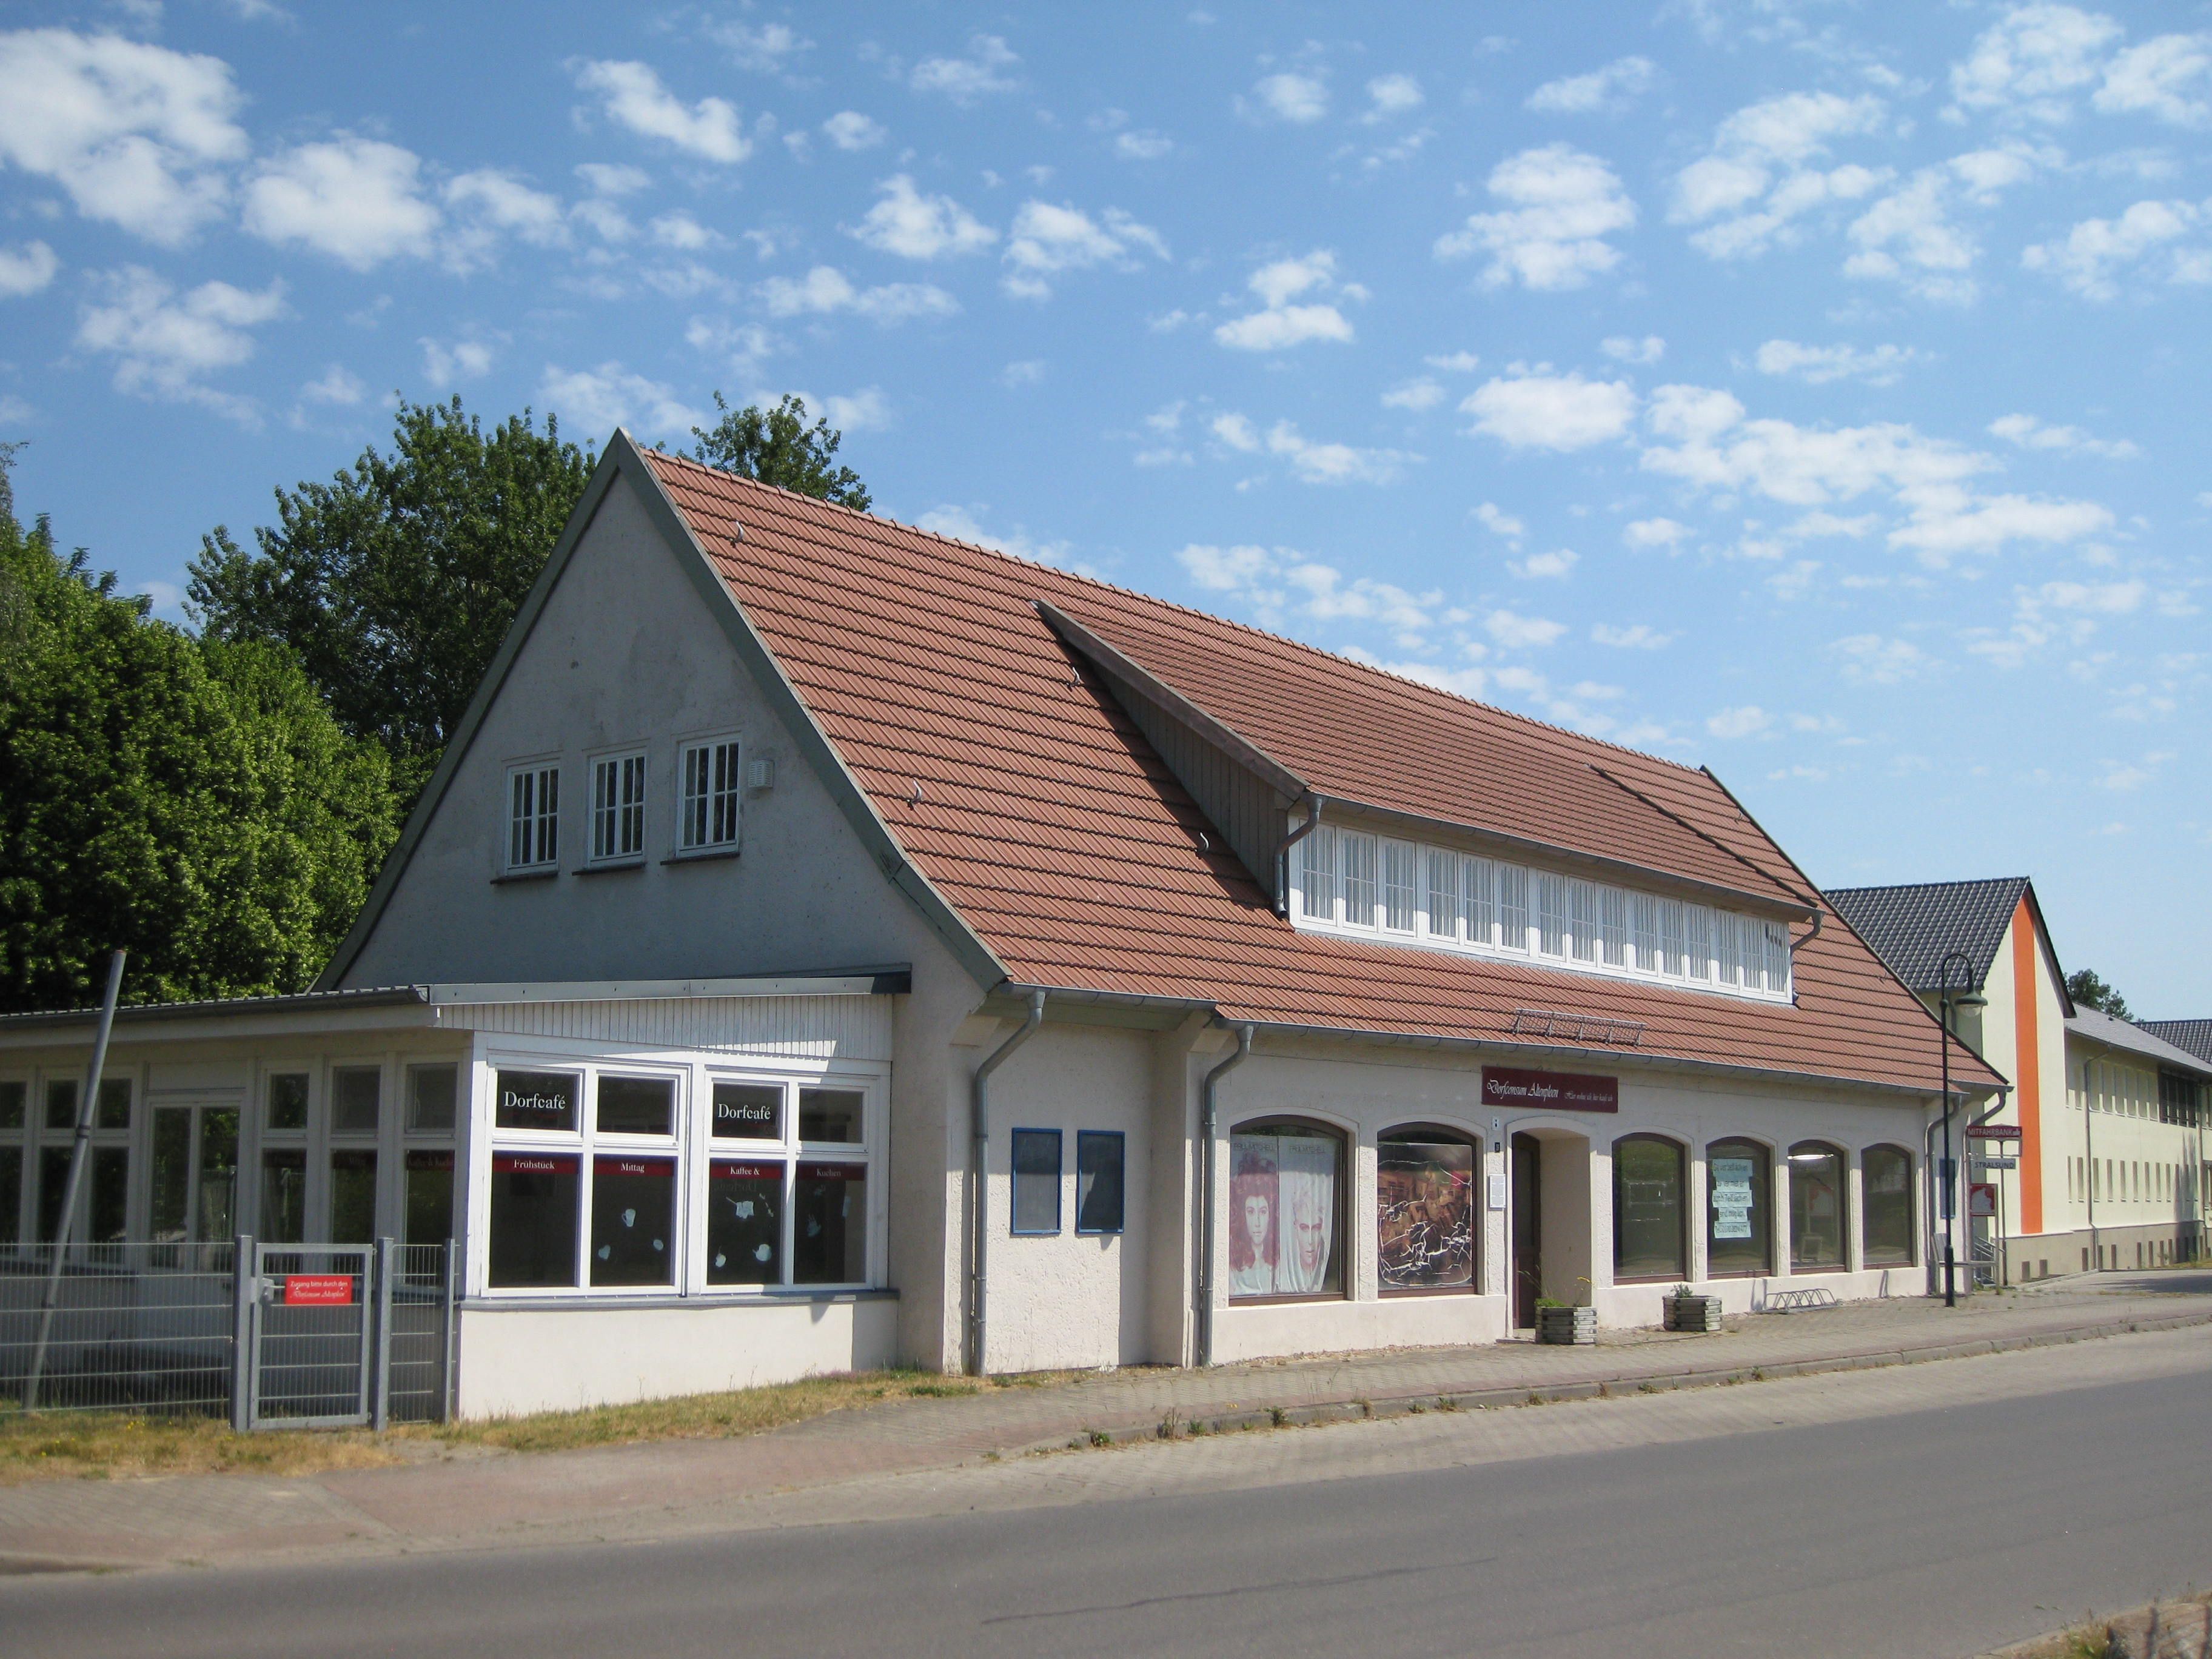 LK Stralsund - Altenpleen: Ladenfläche ehem. Landwarenhaus mit Anbau (evtl. Cafe), Parkplätze, barrierefreier Zugang